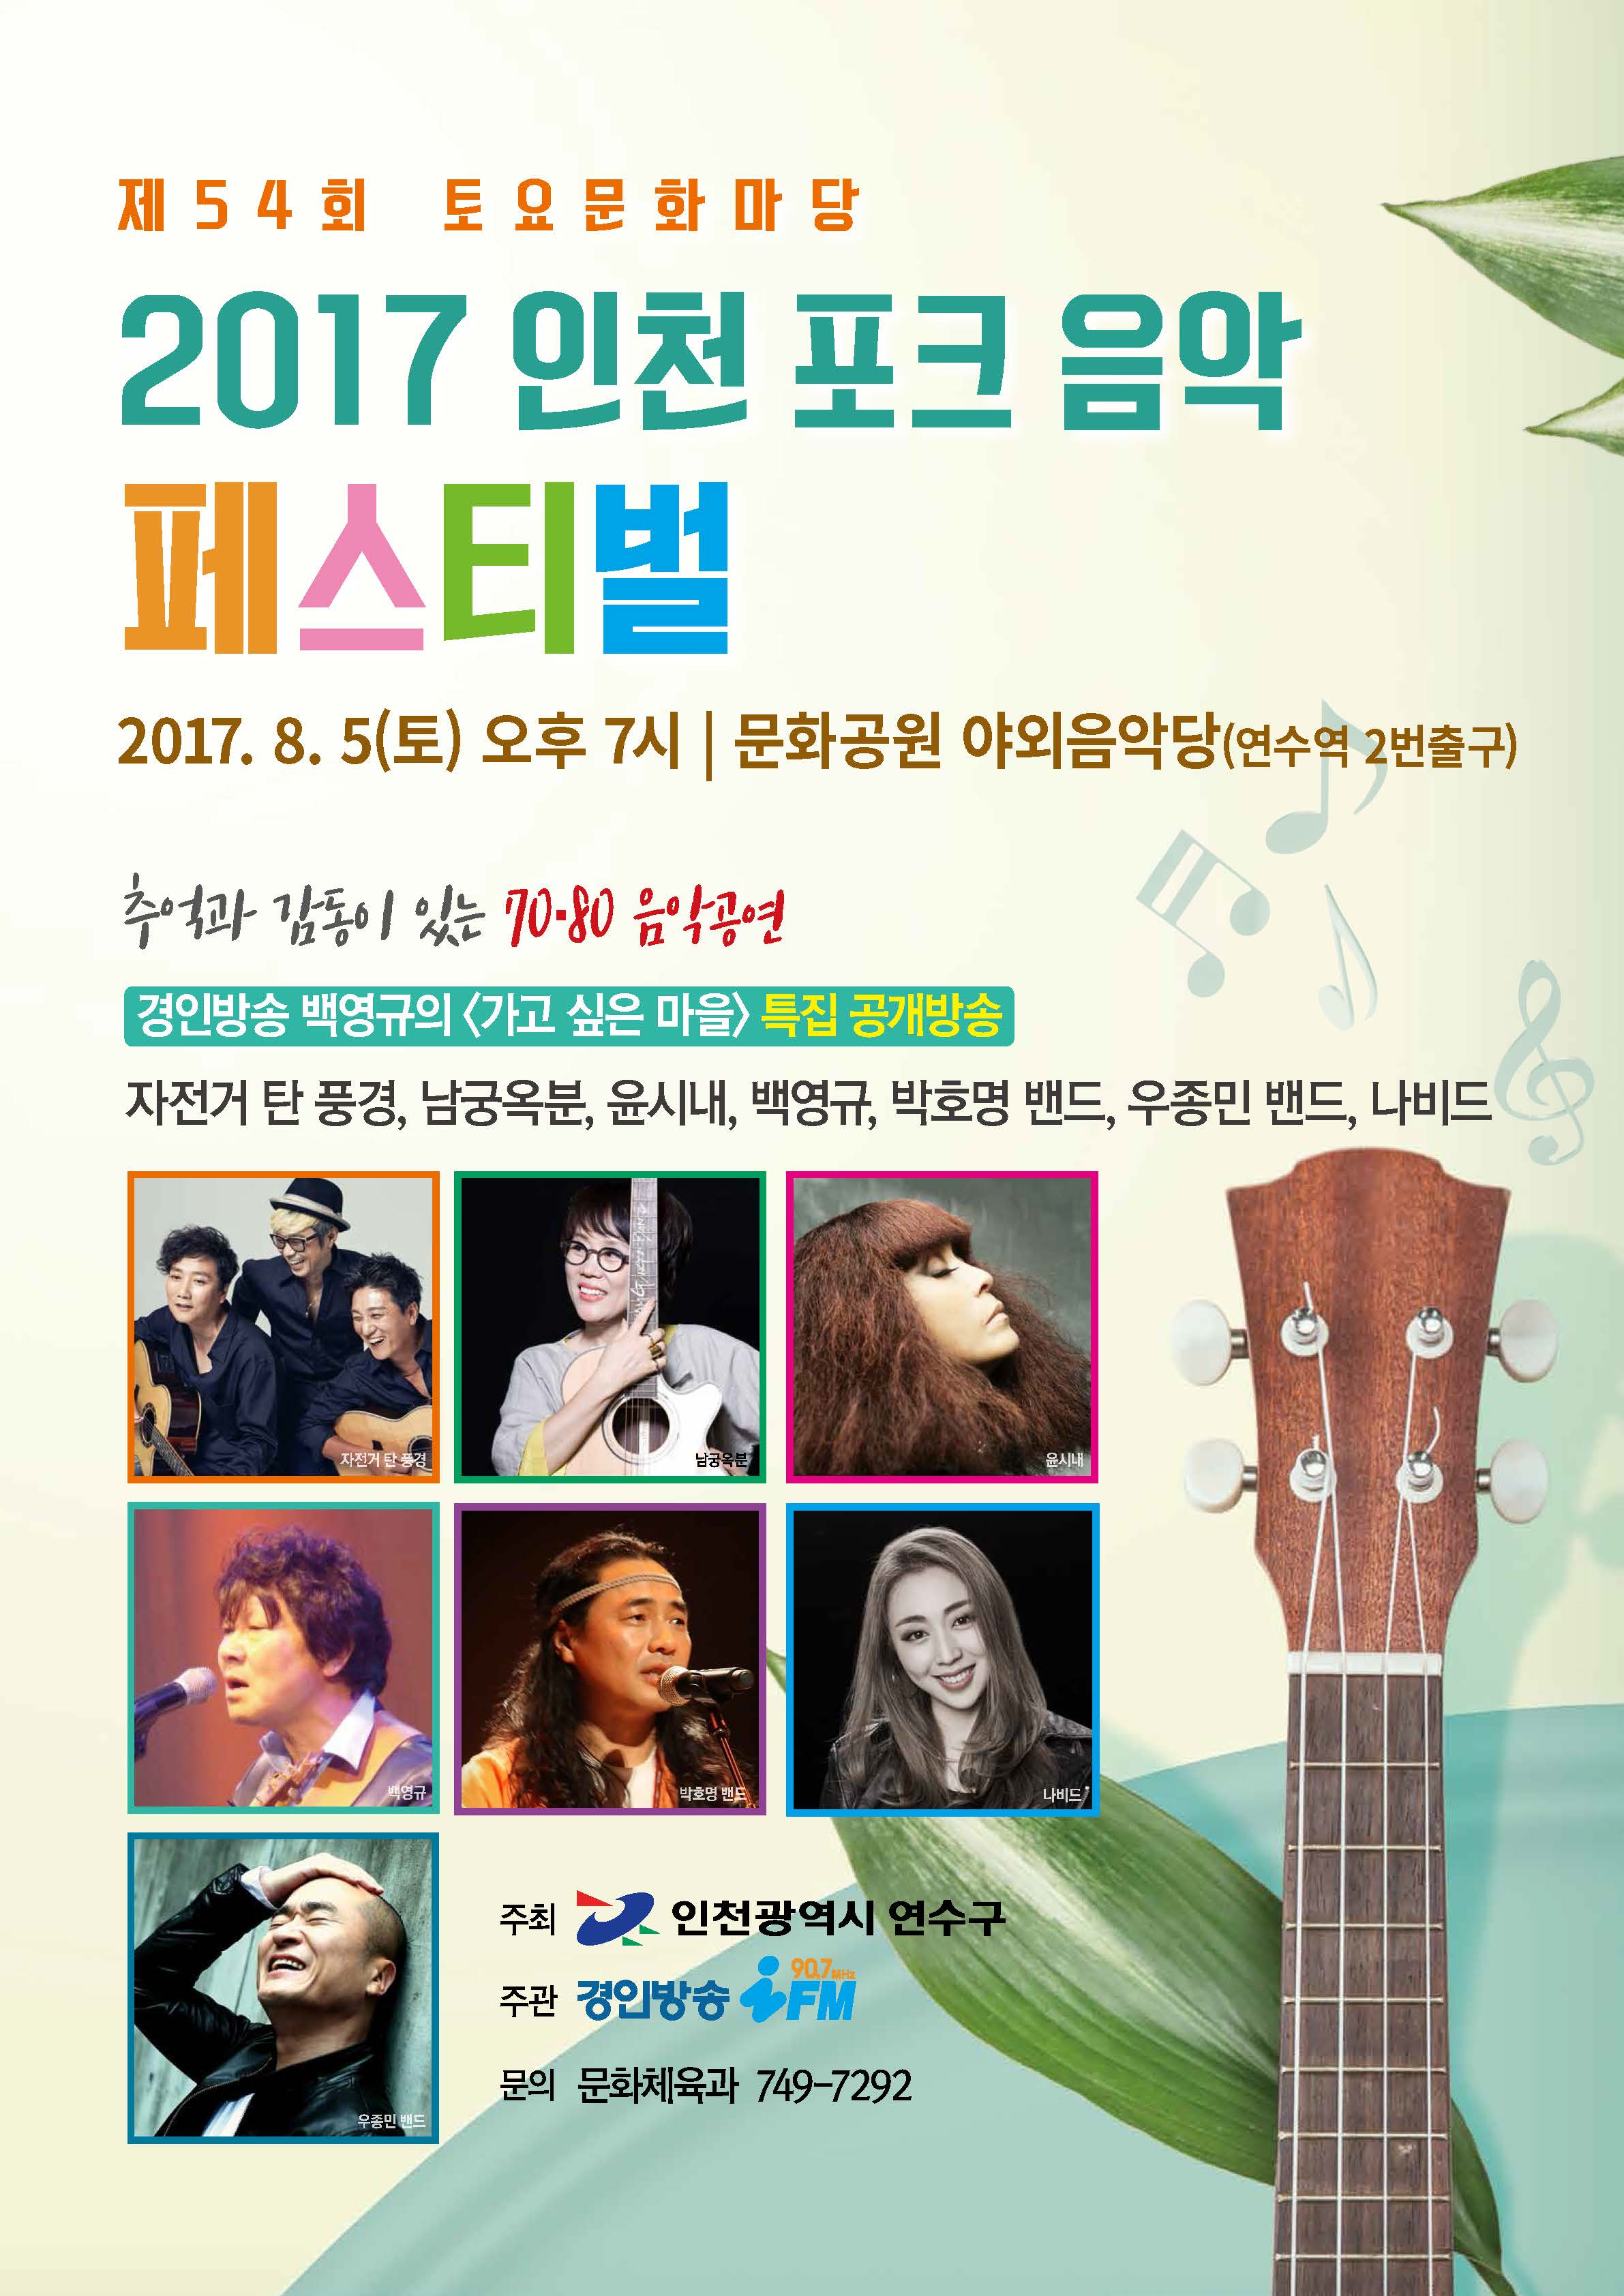 2017 인천 포크 음악 페스티벌 공연포스터. 자세한 내용은 하단의 공연소개 내용 참고